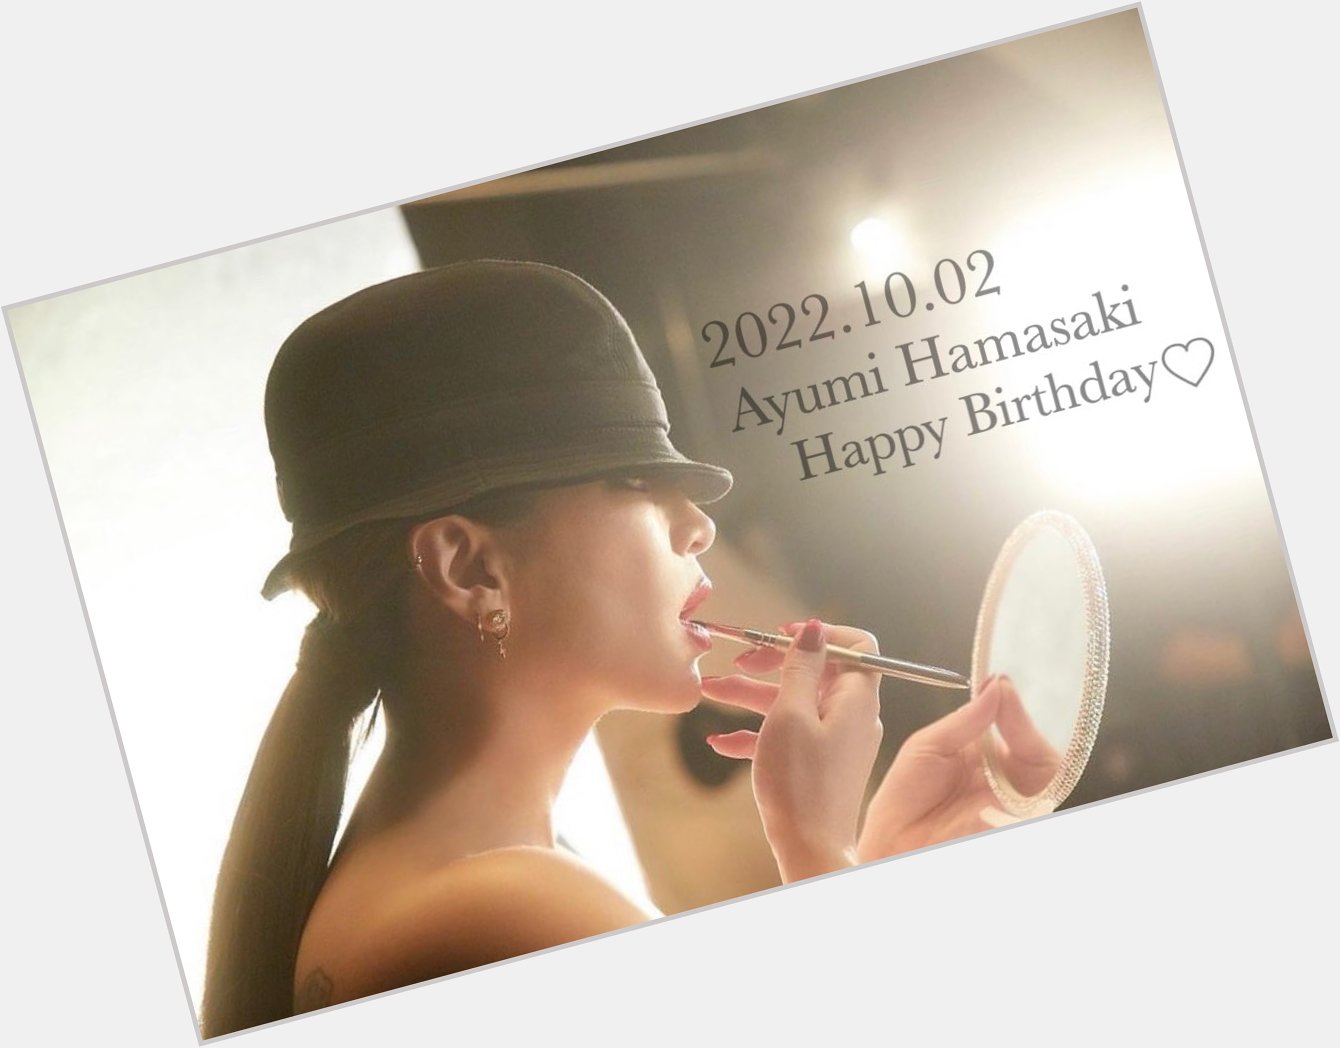 2022.10.02
Ayumi Hamasaki Happy Birthday           ayu    ...    